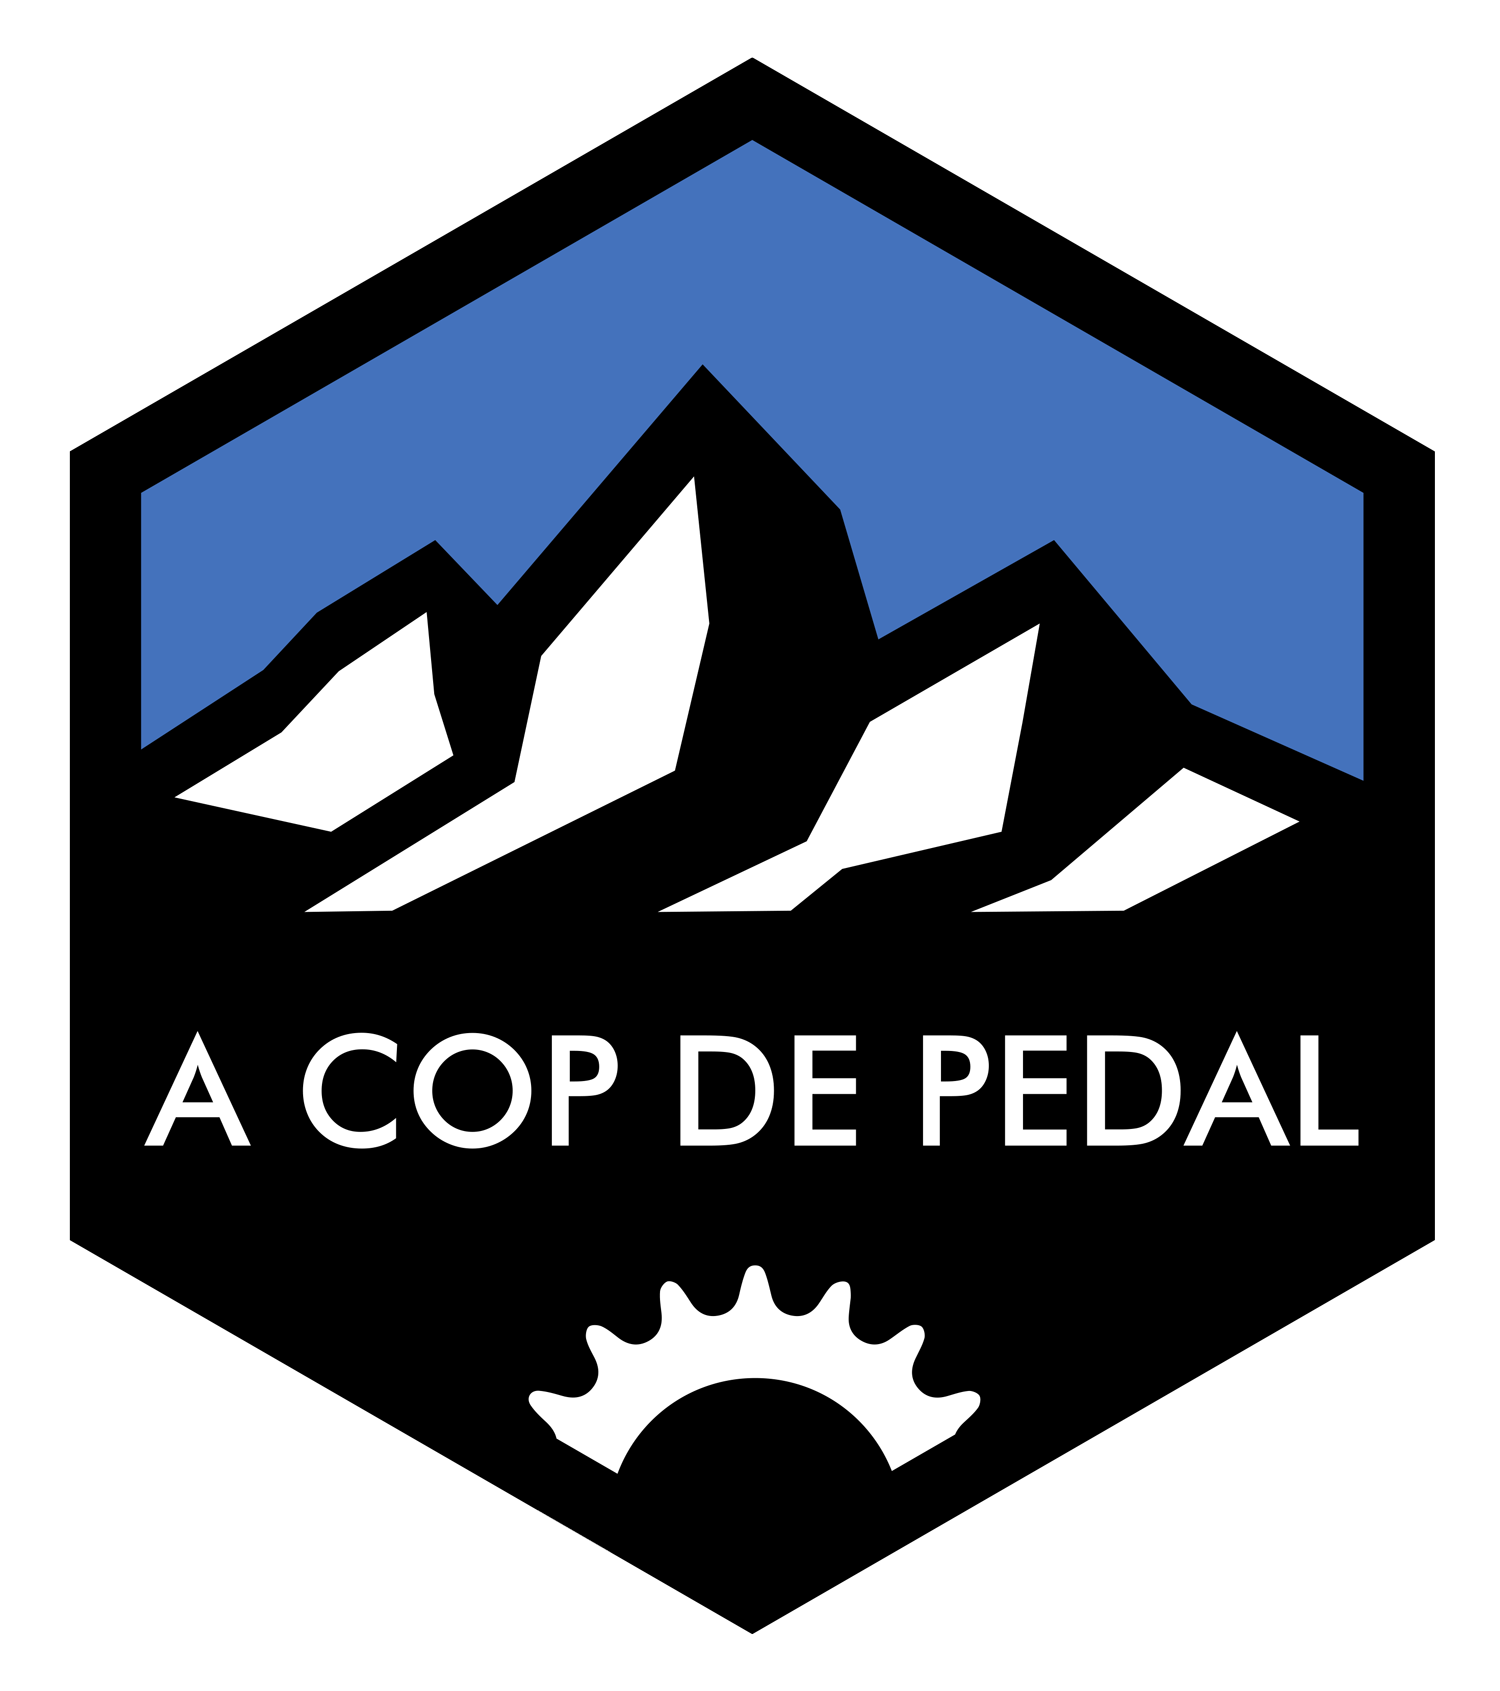 A cop de pedal